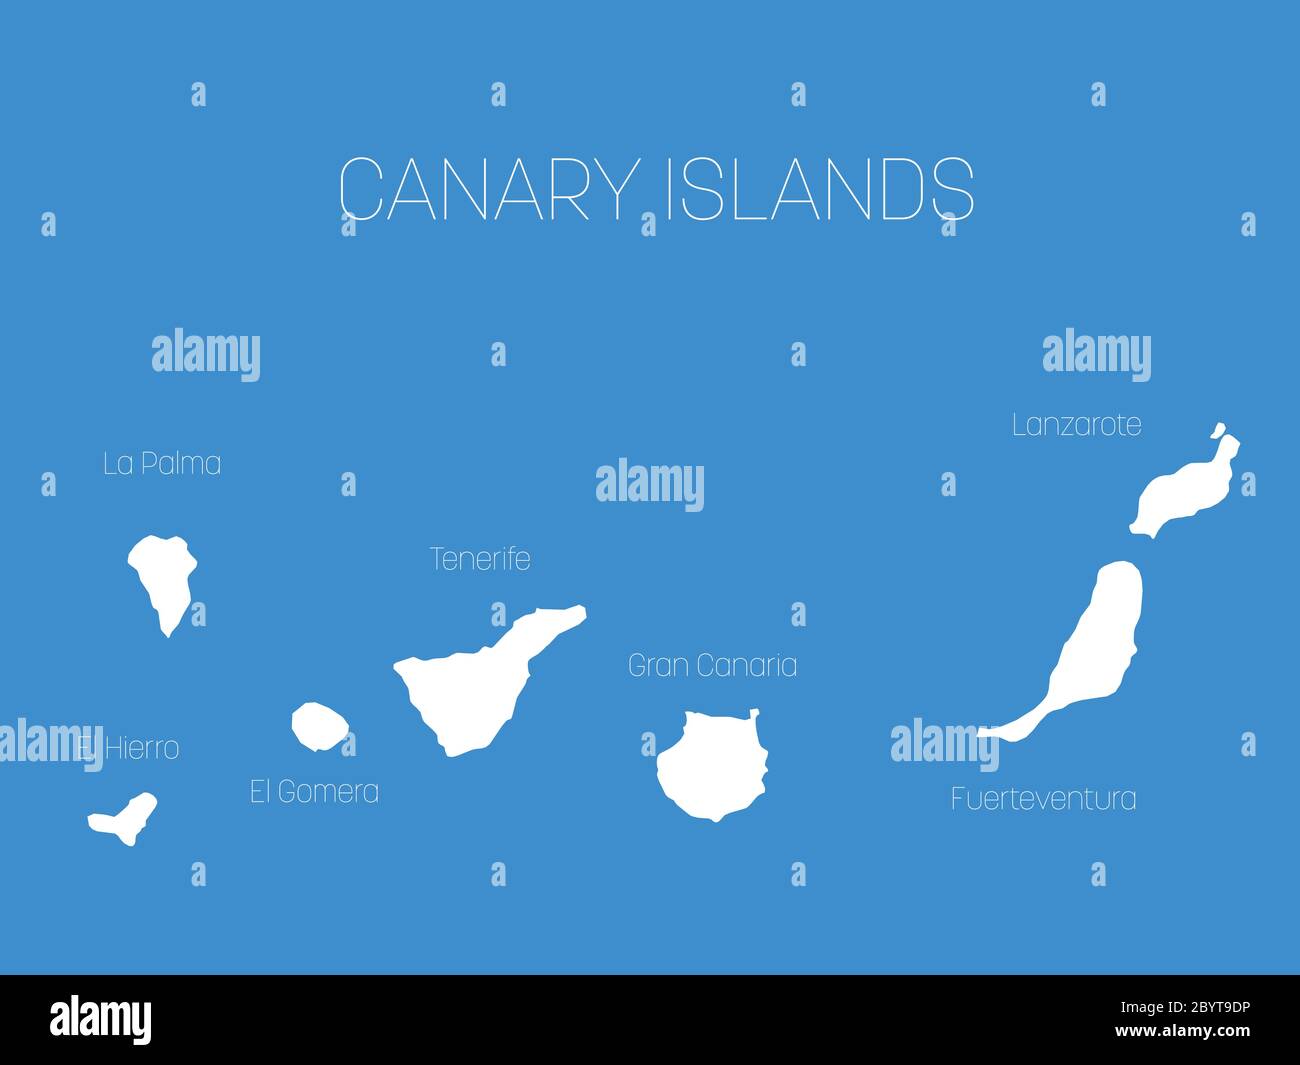 Carte des îles Canaries, Espagne, avec les étiquettes de chaque île - El Hierro, la Palma, la Gomera, Tenerife, Gran Canaria, Fuerteventura et Lanzarote. Silhouette vectorielle blanche sur fond bleu. Illustration de Vecteur